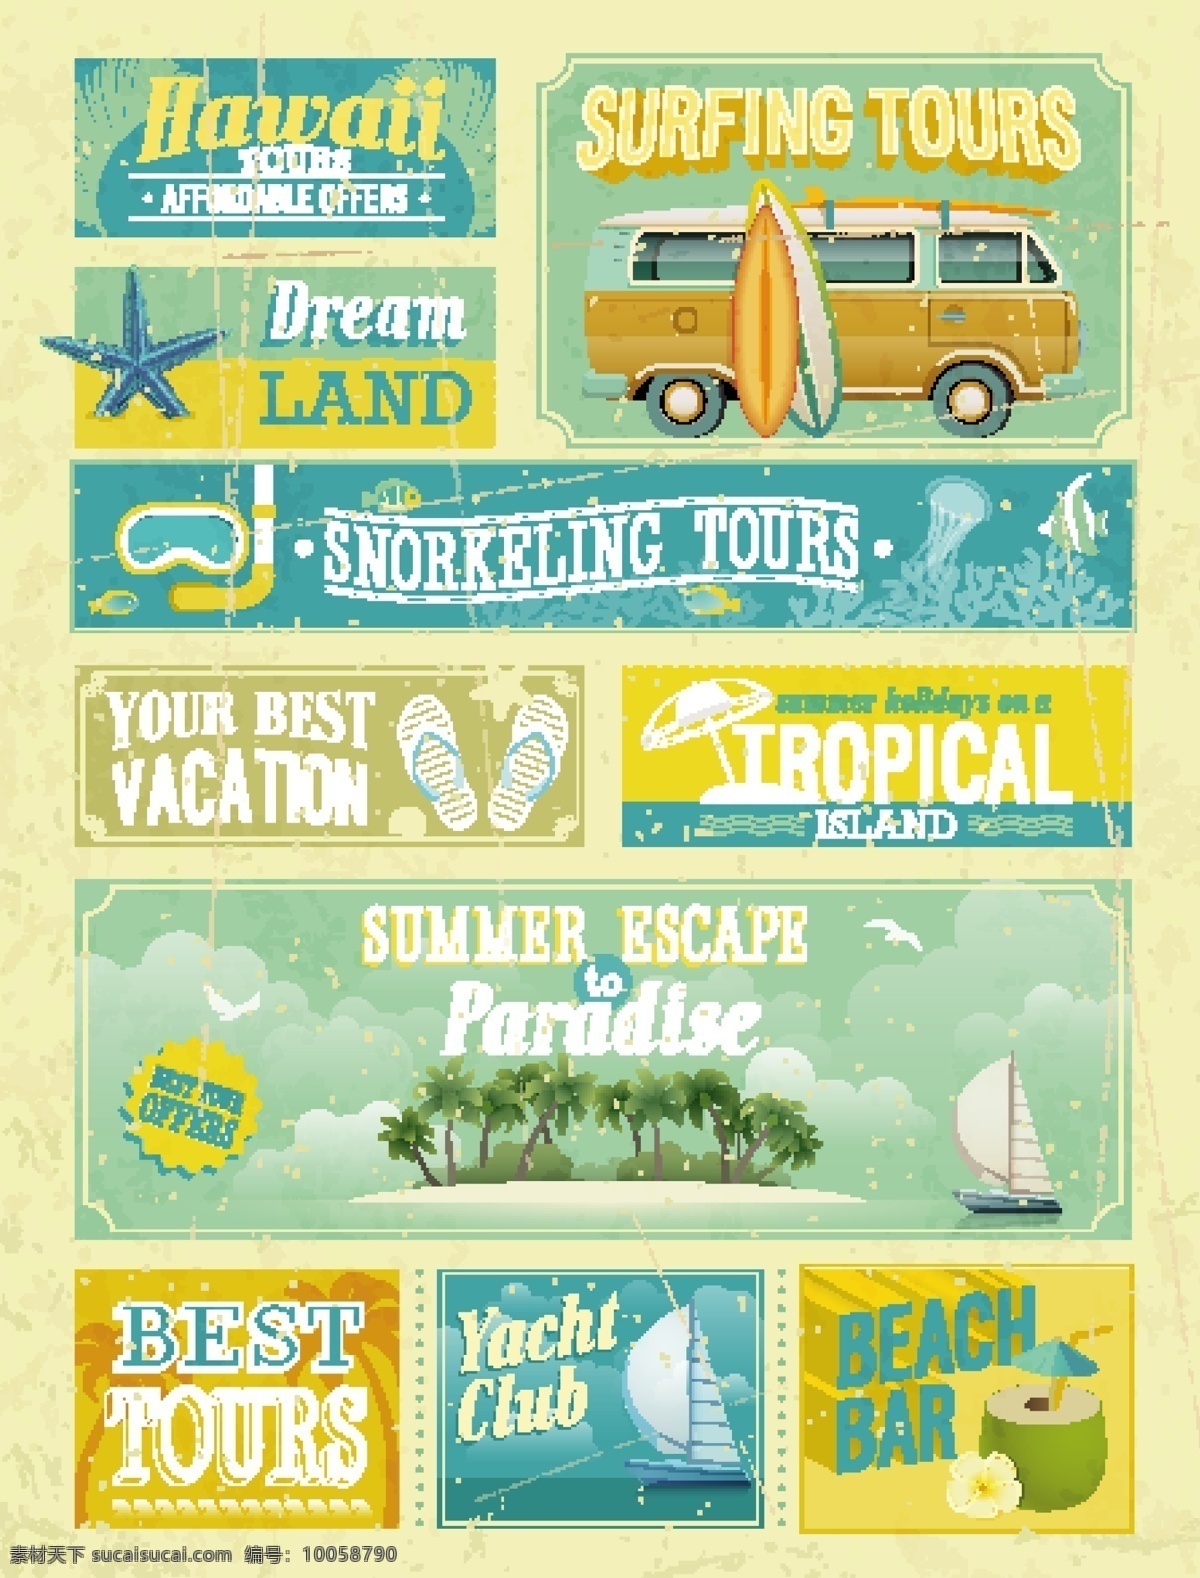 怀旧 旅游 夏威夷 负担 提供 海滩酒吧 最好 旅游路线 夏威夷旅游 海报 向量 免费 矢量图 矢量 浮潜游 一起 度过 一个 热带 岛屿 上 夏季避暑天堂 冲浪旅游 游艇俱乐部 你最好的假期 其他矢量图